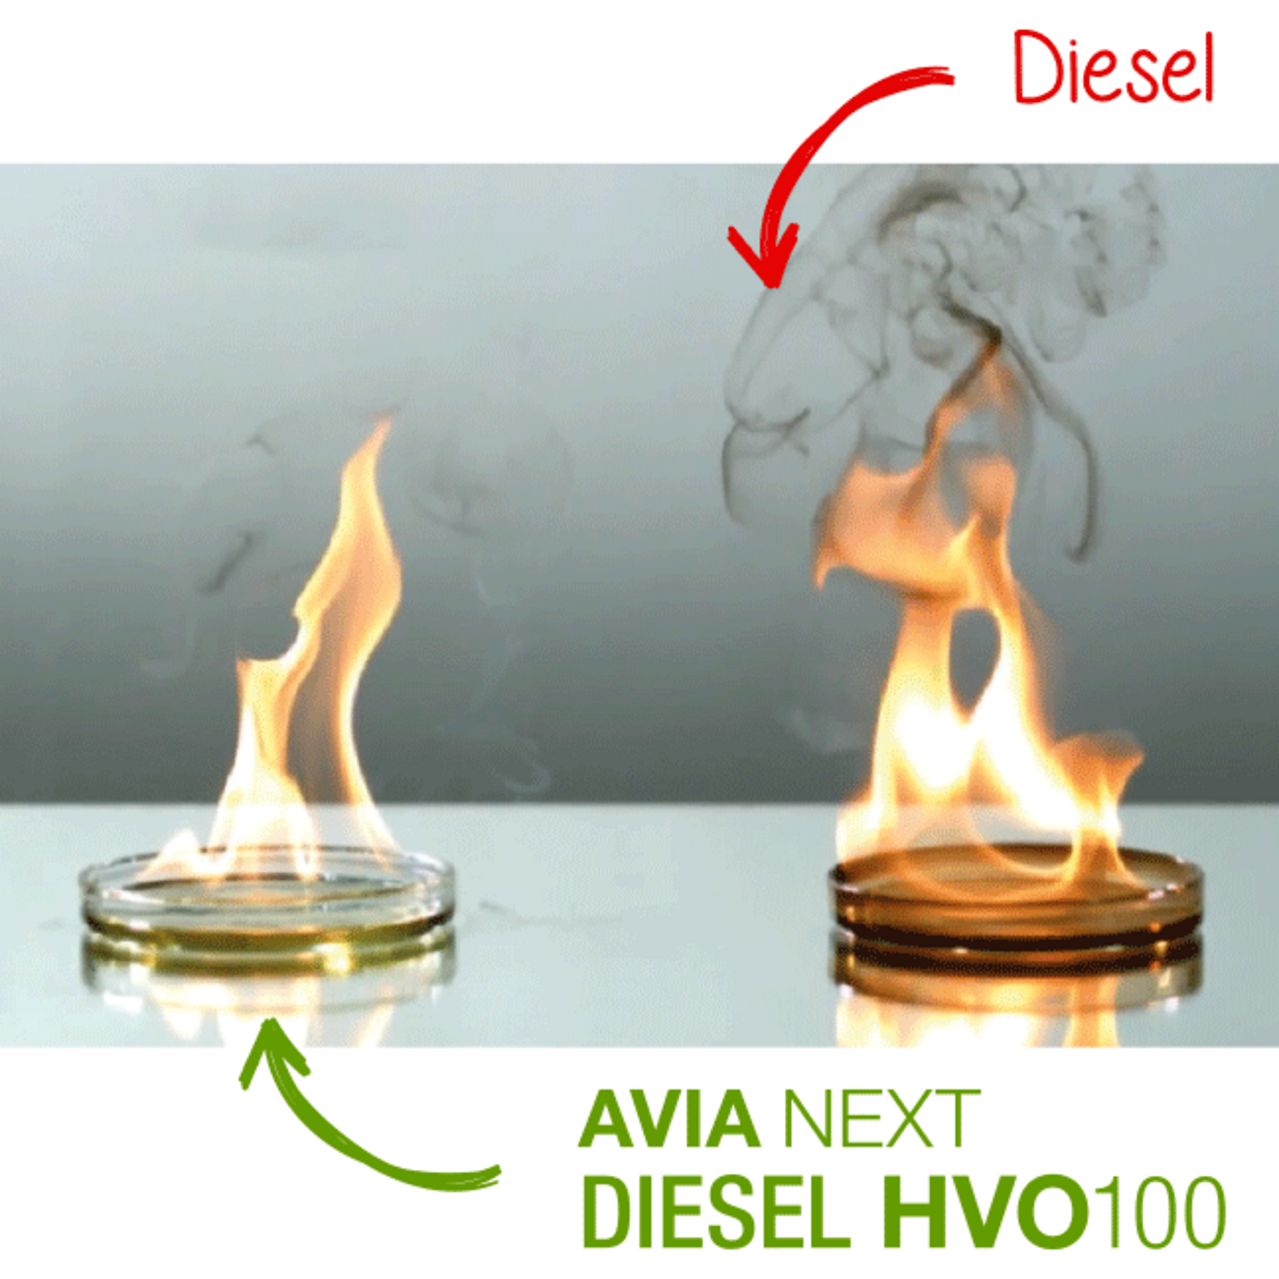 Diesel_HVO_Verbrennung_648x376px.png